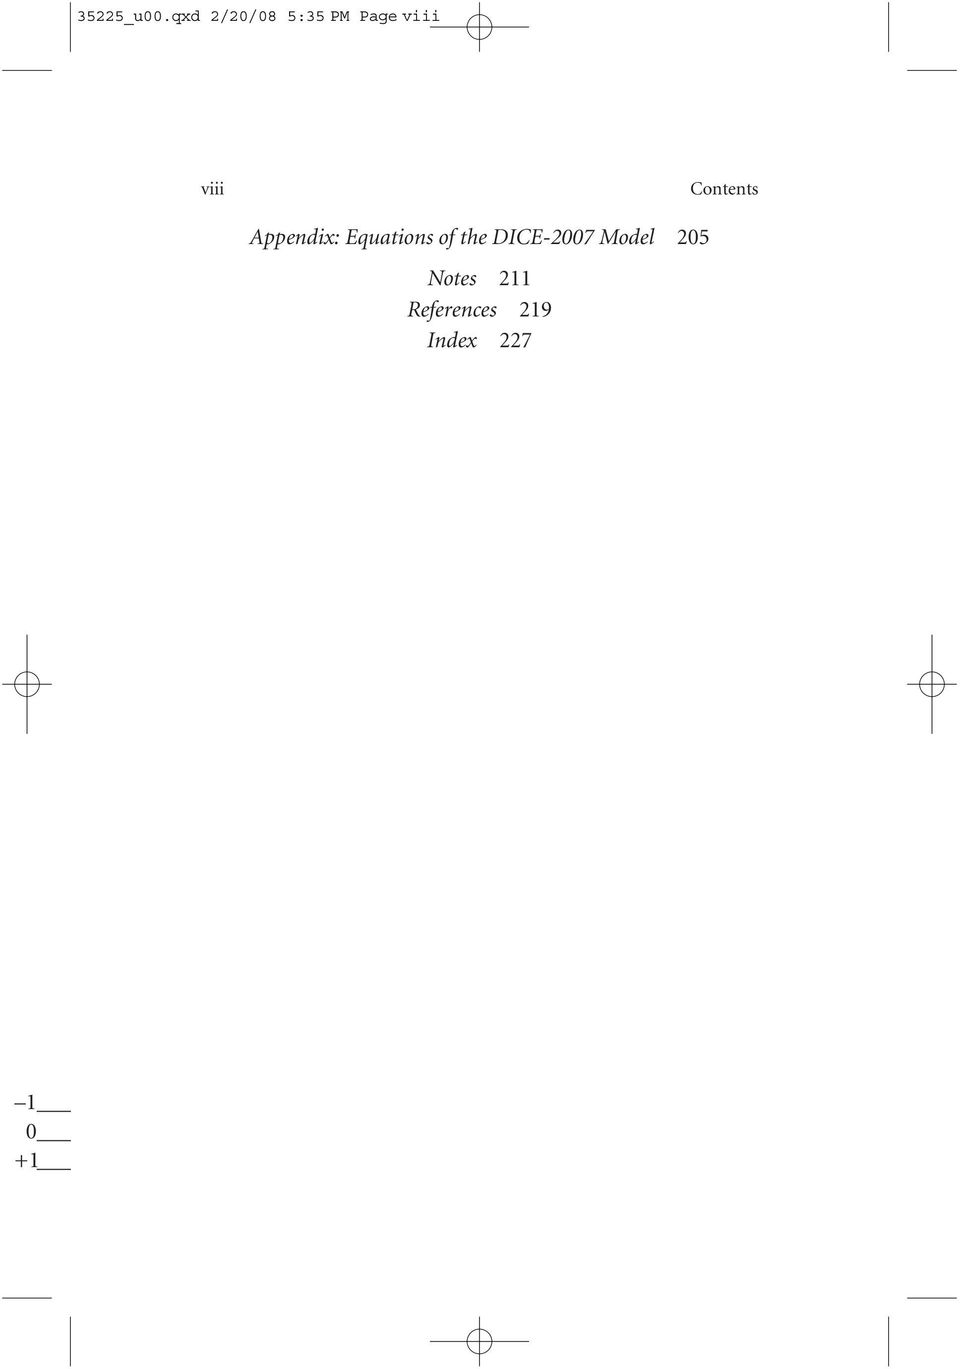 Contents Appendix: Equations of the